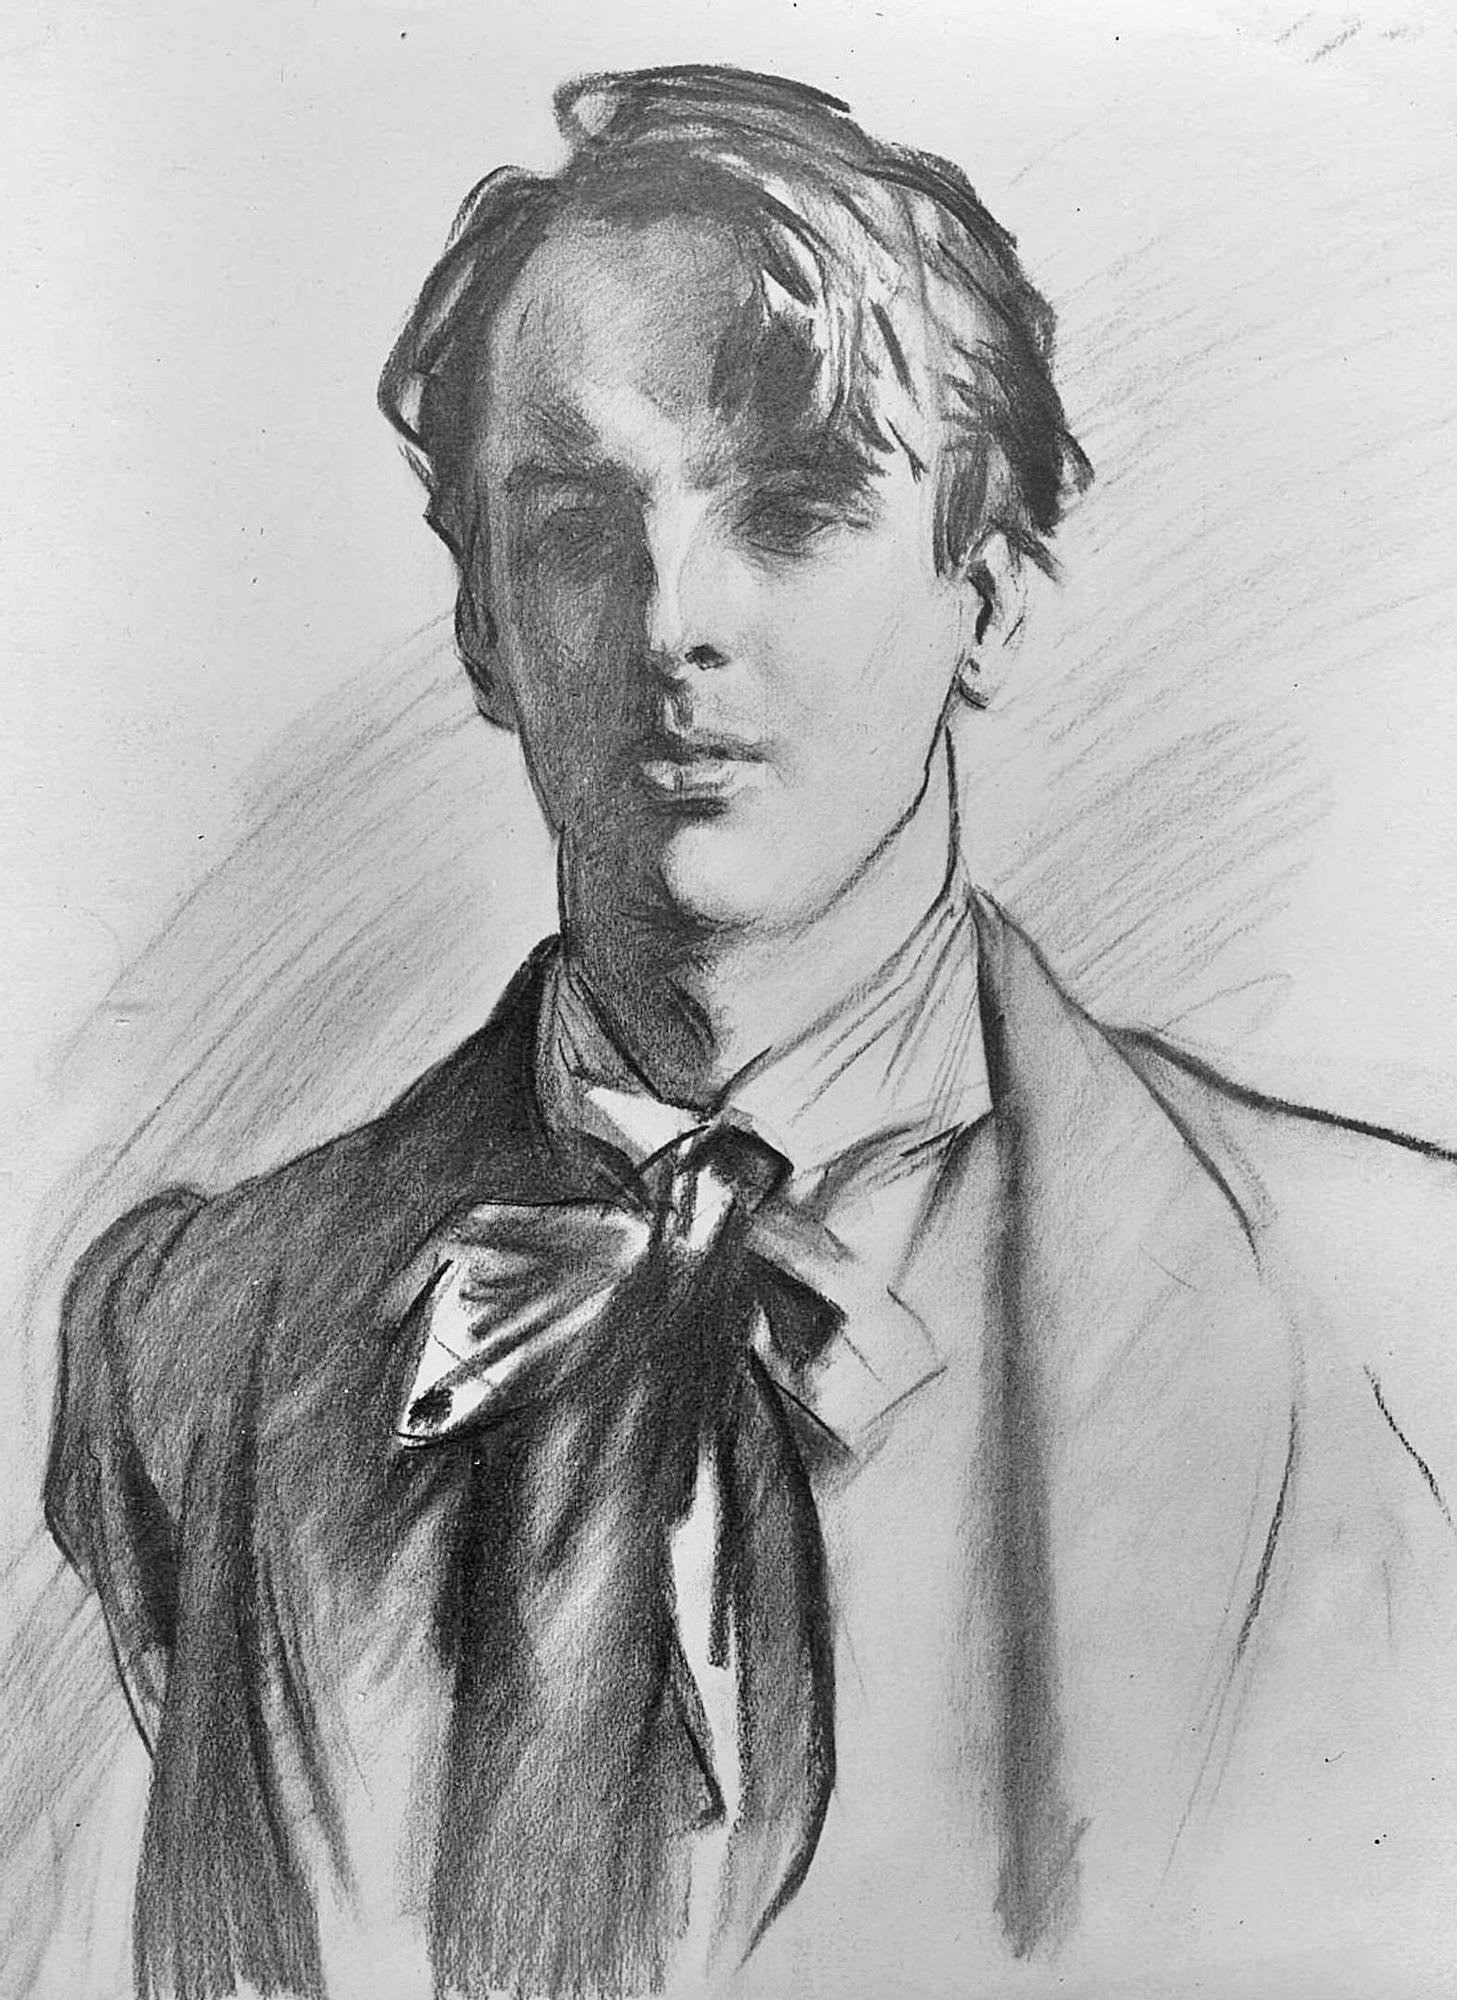 Yeats nun retrato da autoría de J.S. Sargent (1908).